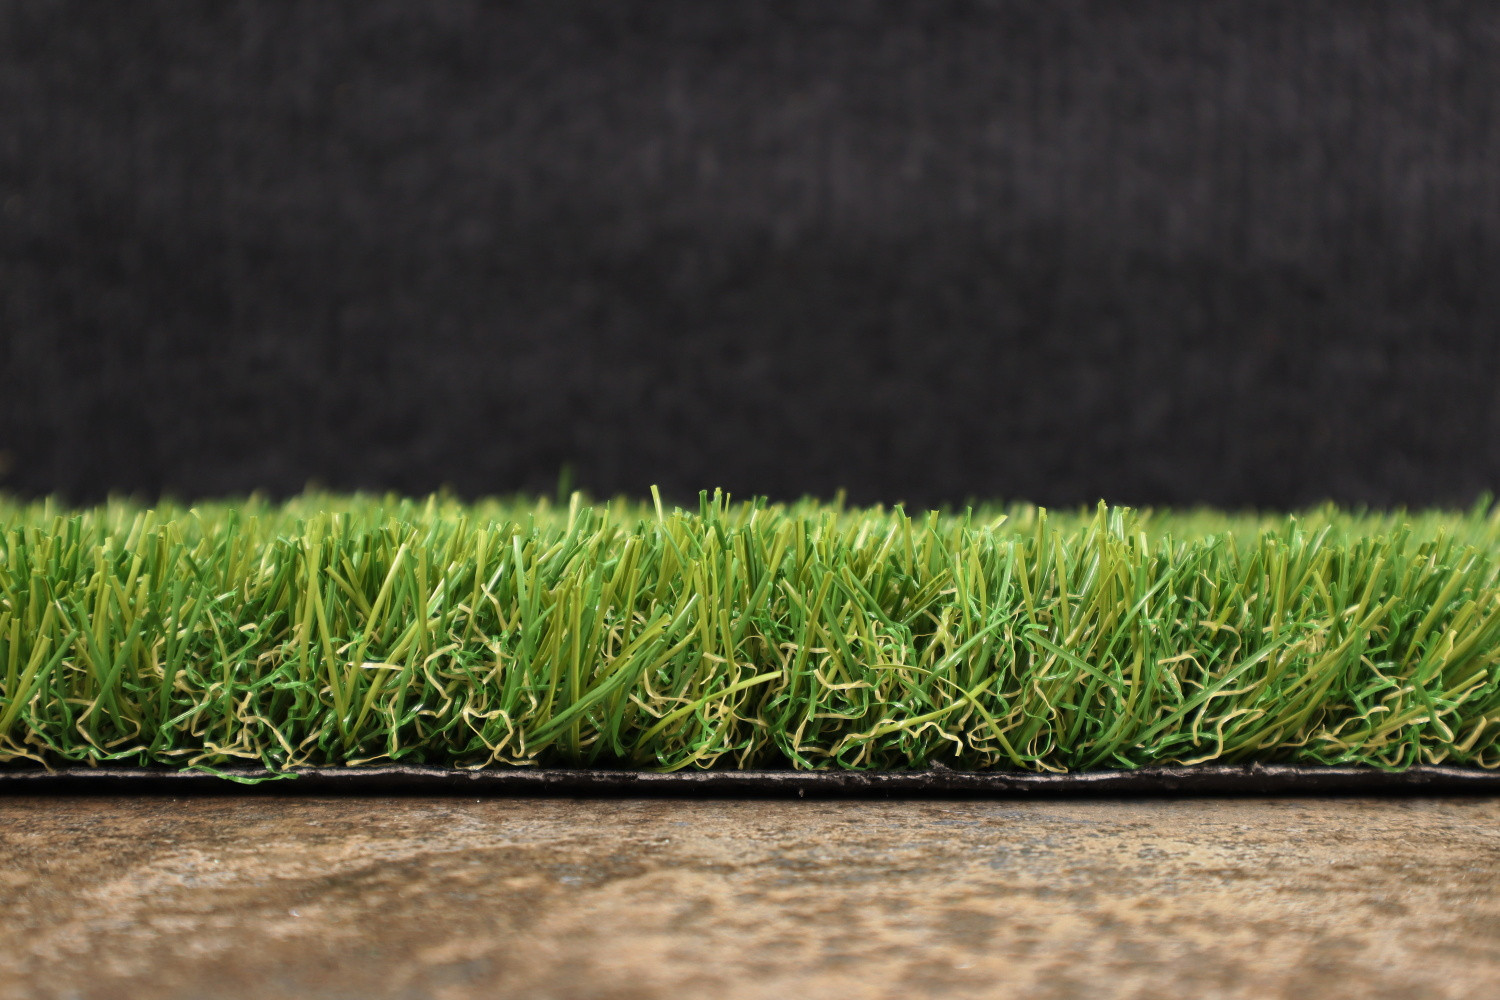 AKCE: 86x240 cm Umělá tráva Rosalia metrážní - Rozměr na míru cm Artificial grass specialists